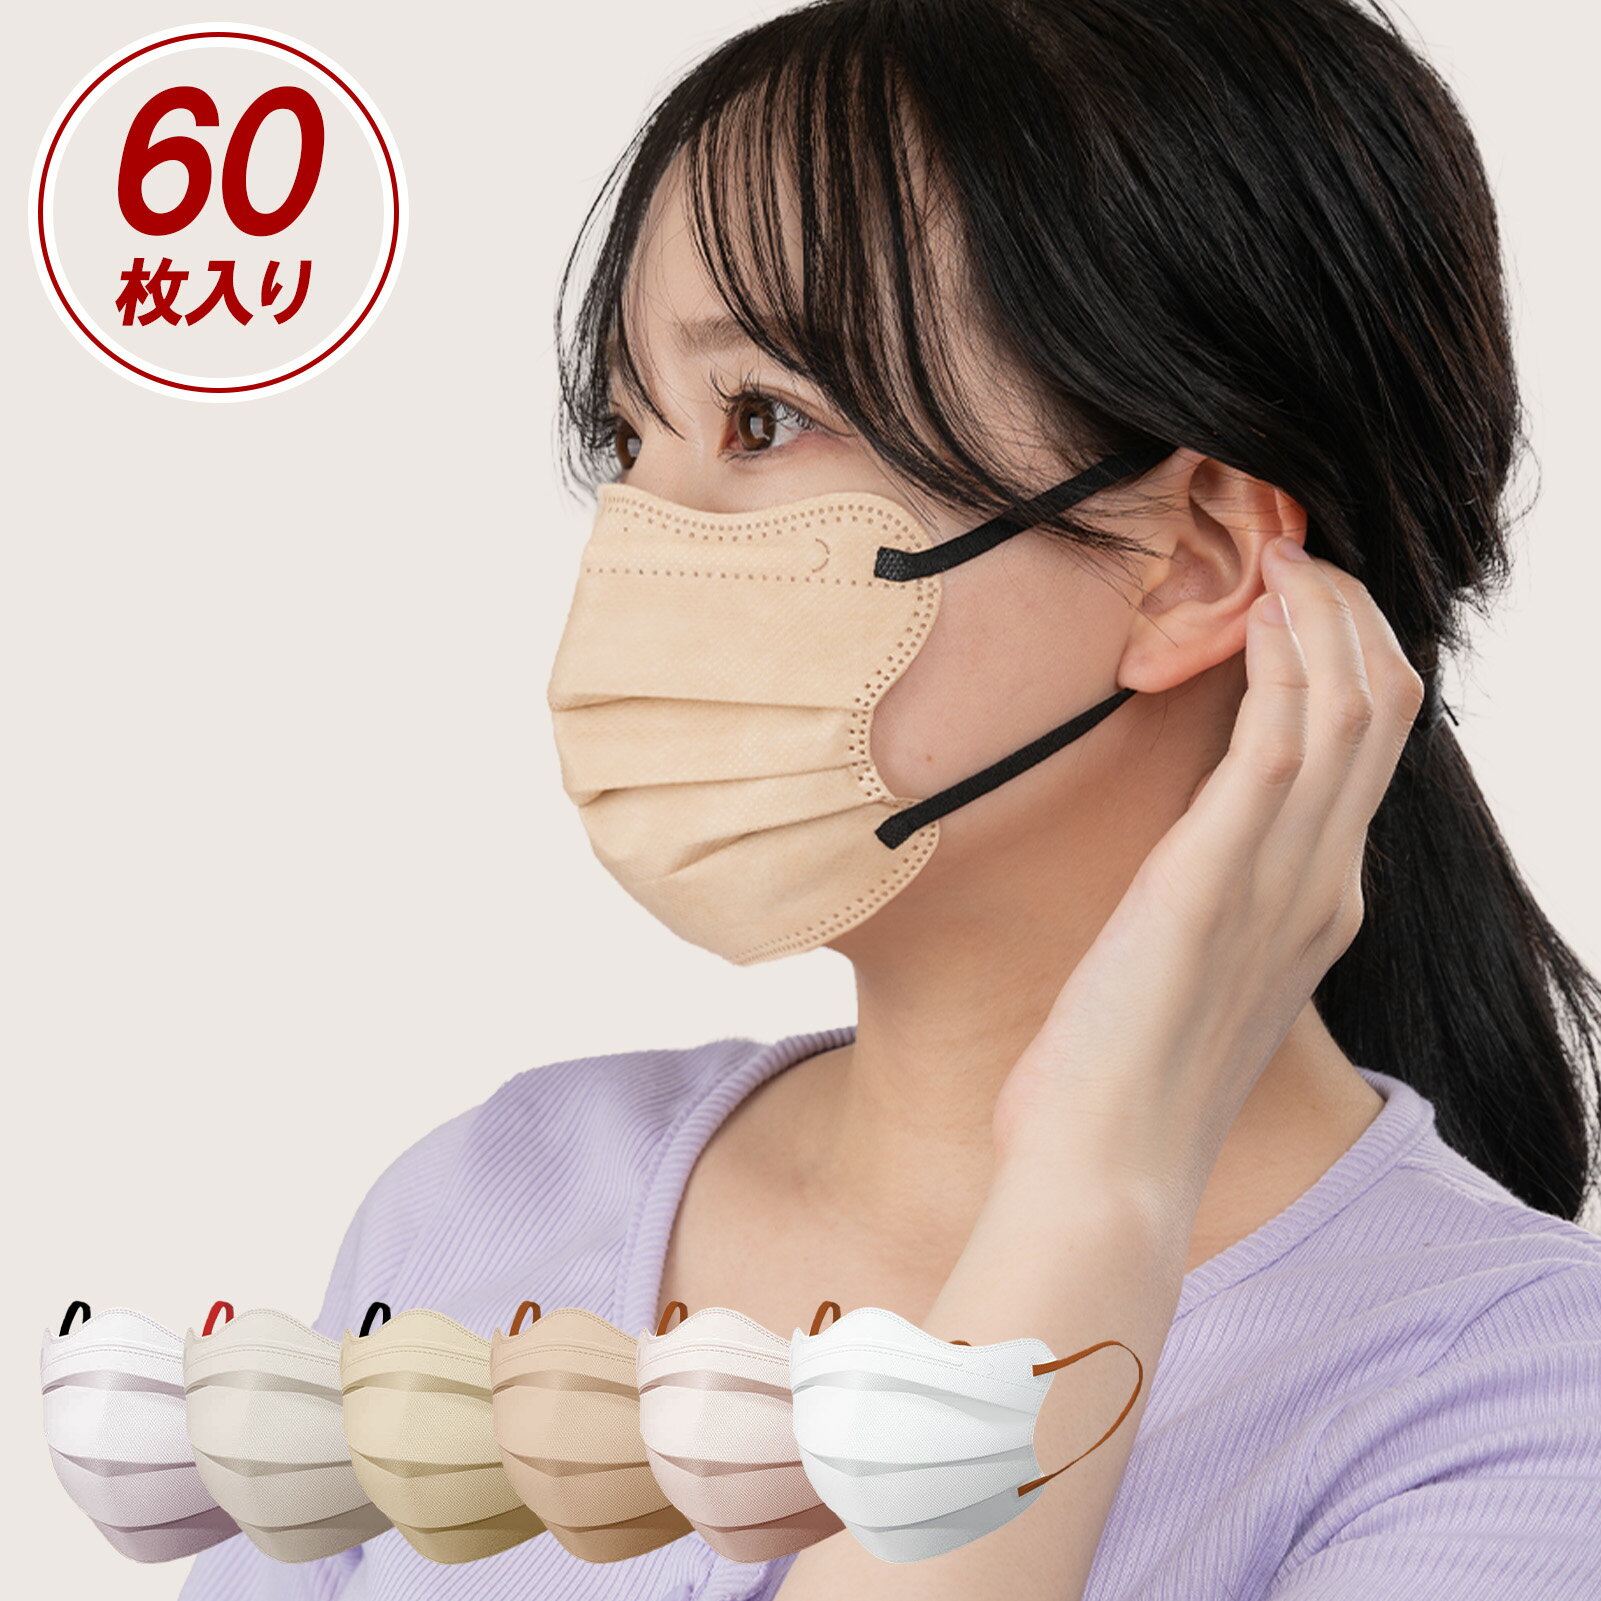 マスク 不織布 4Dマスク 60枚 バイカラー マスク 女性 小さめ 子供 普通サイズ プリーツ 立体 血色 使い捨てマスク 耳が痛くなりにくい 送料無料 Kenichi